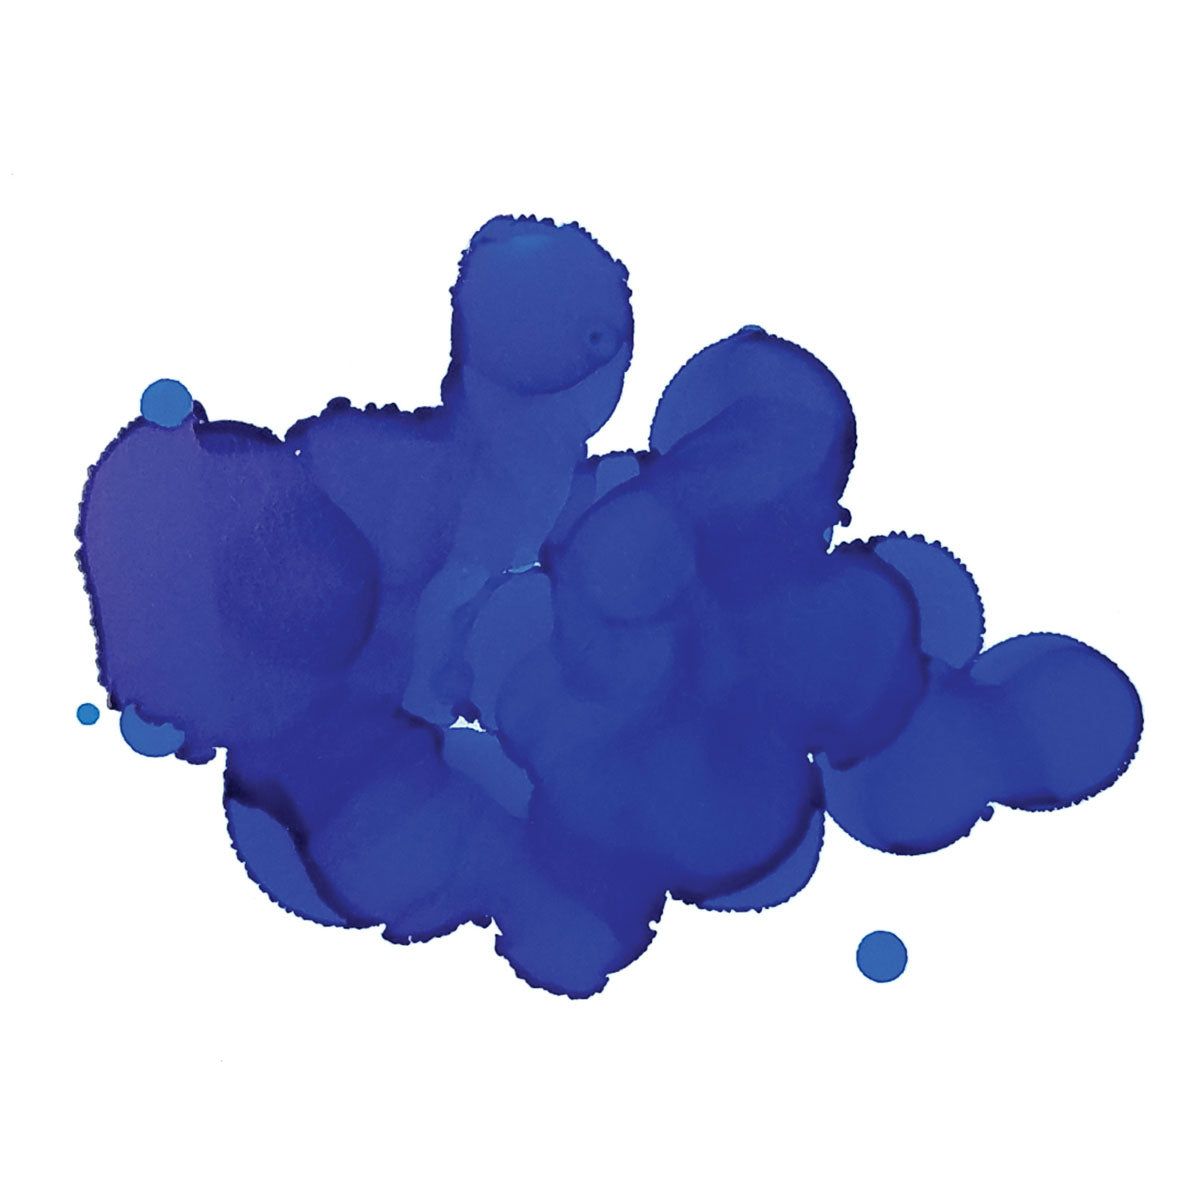 Inchiocce jacquard-Pinata 1-2oz 15ml-Zaffiro blu 017